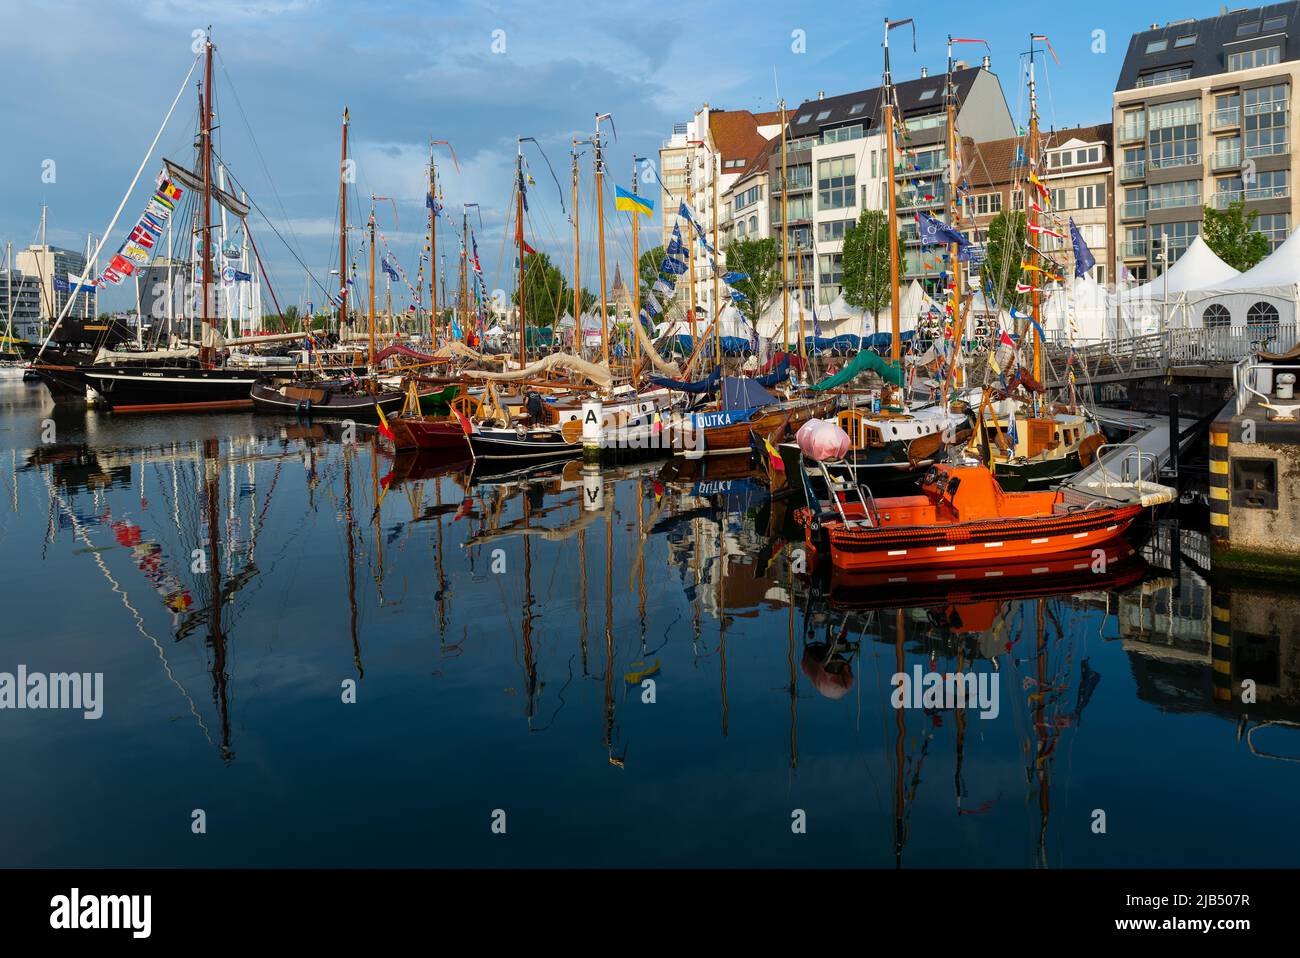 Bateaux et bateaux à voile dans le port de plaisance d'Ostende au festival des bateaux d'Anchor, Oostende, Belgique. Banque D'Images